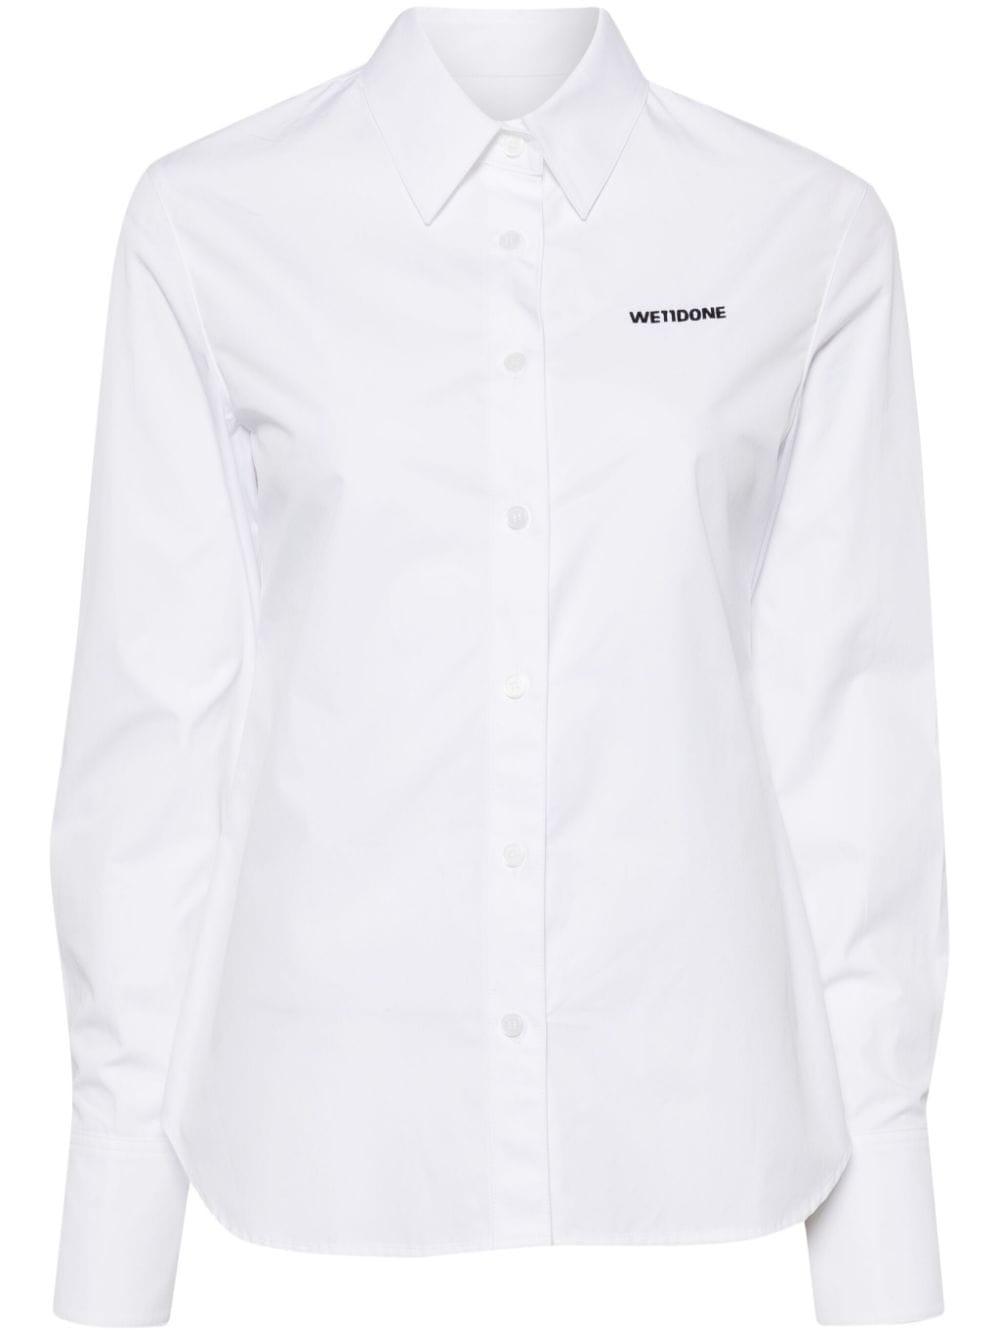 We11done logo-embroidered cotton shirt - Weiß von We11done